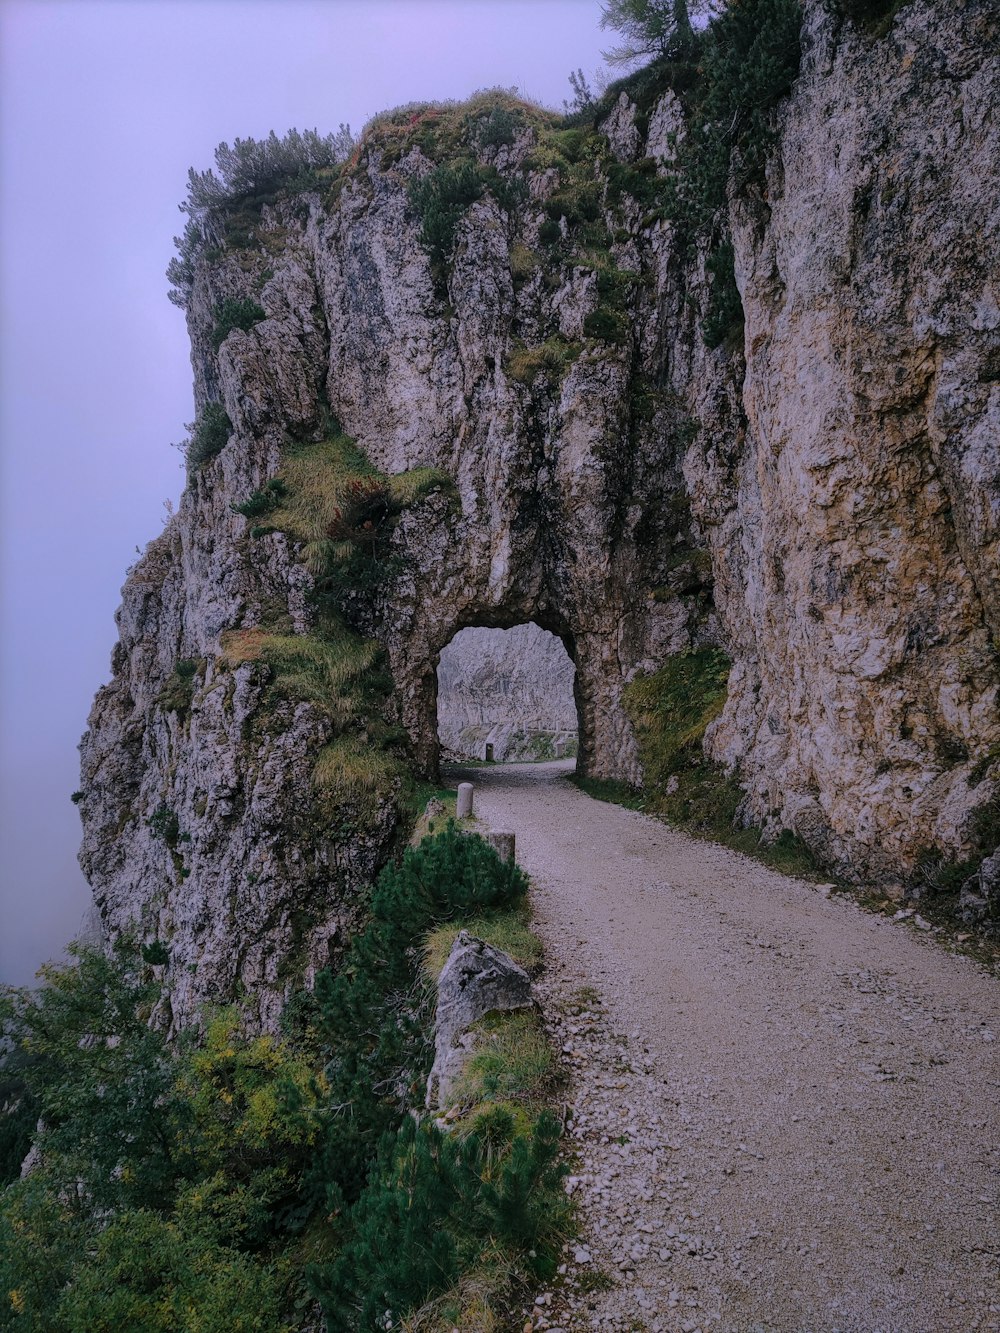 a road going through a cliff